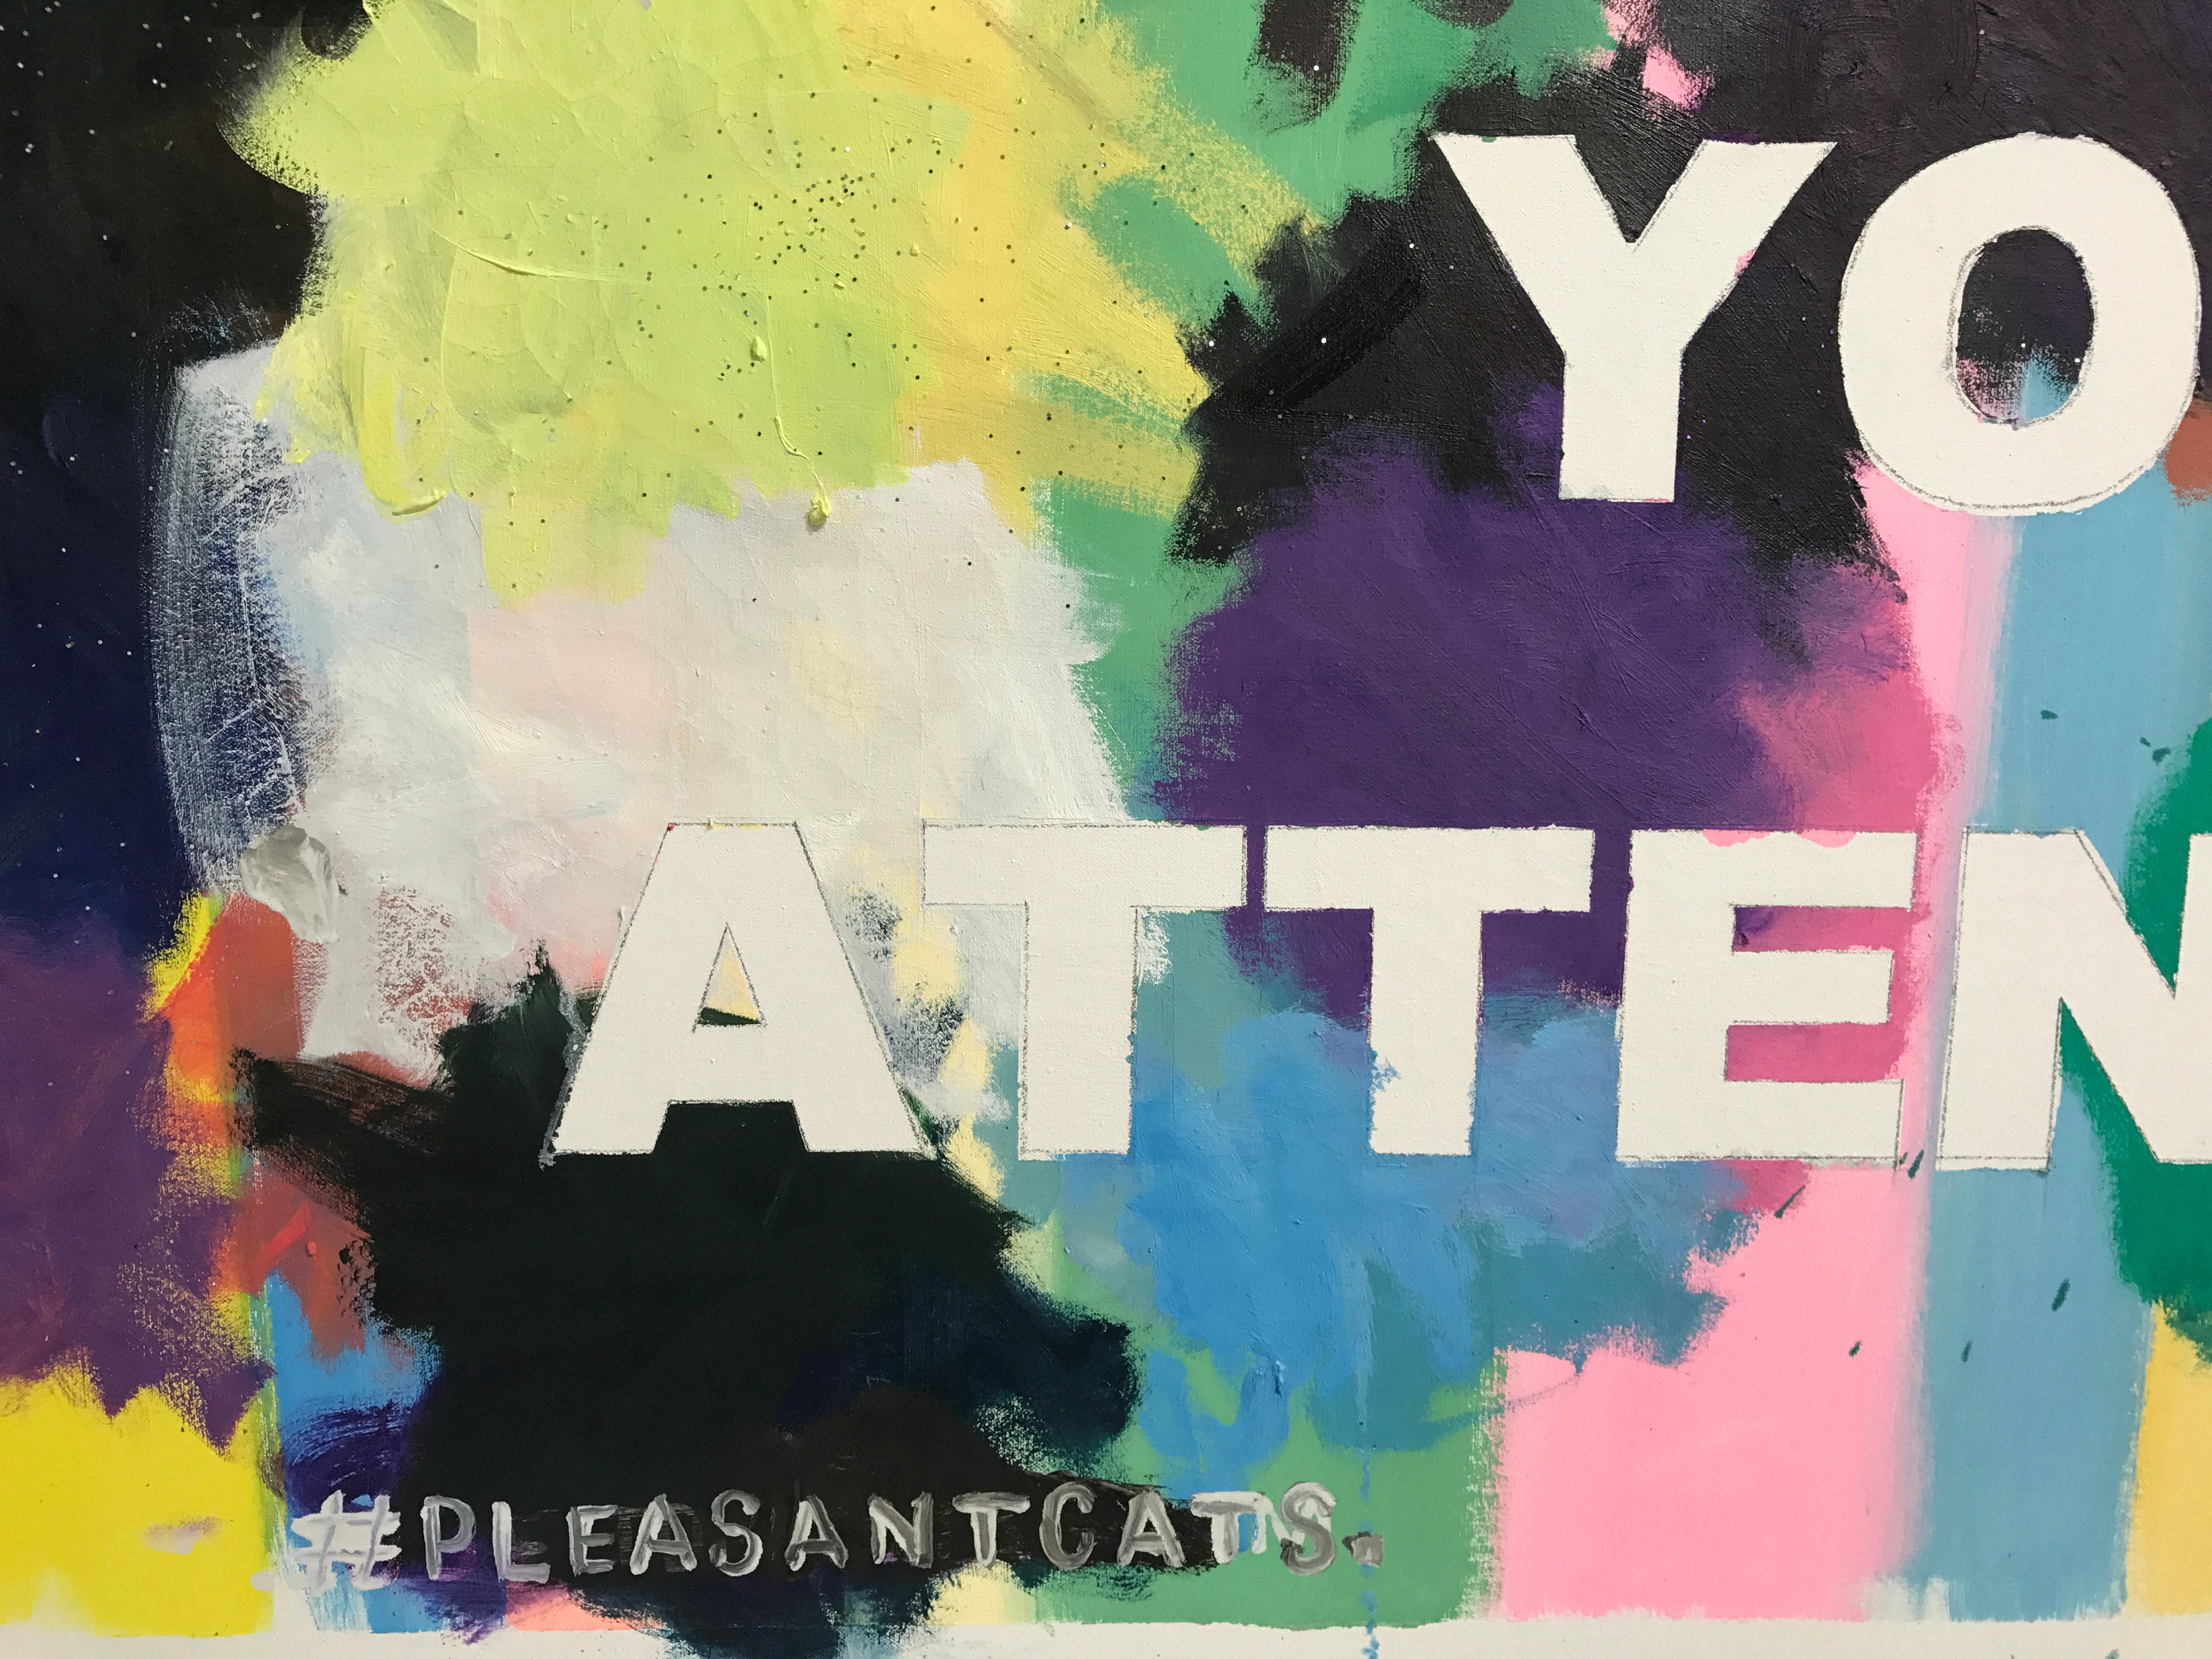 Dieses konzeptionelle, textbasierte Gemälde des New Yorker Künstlers David Kramer besteht aus gestischen Farbflecken auf einem kontrollierten, pastellfarbenen Streifengrund.  Der fettgedruckte Text lautet: 